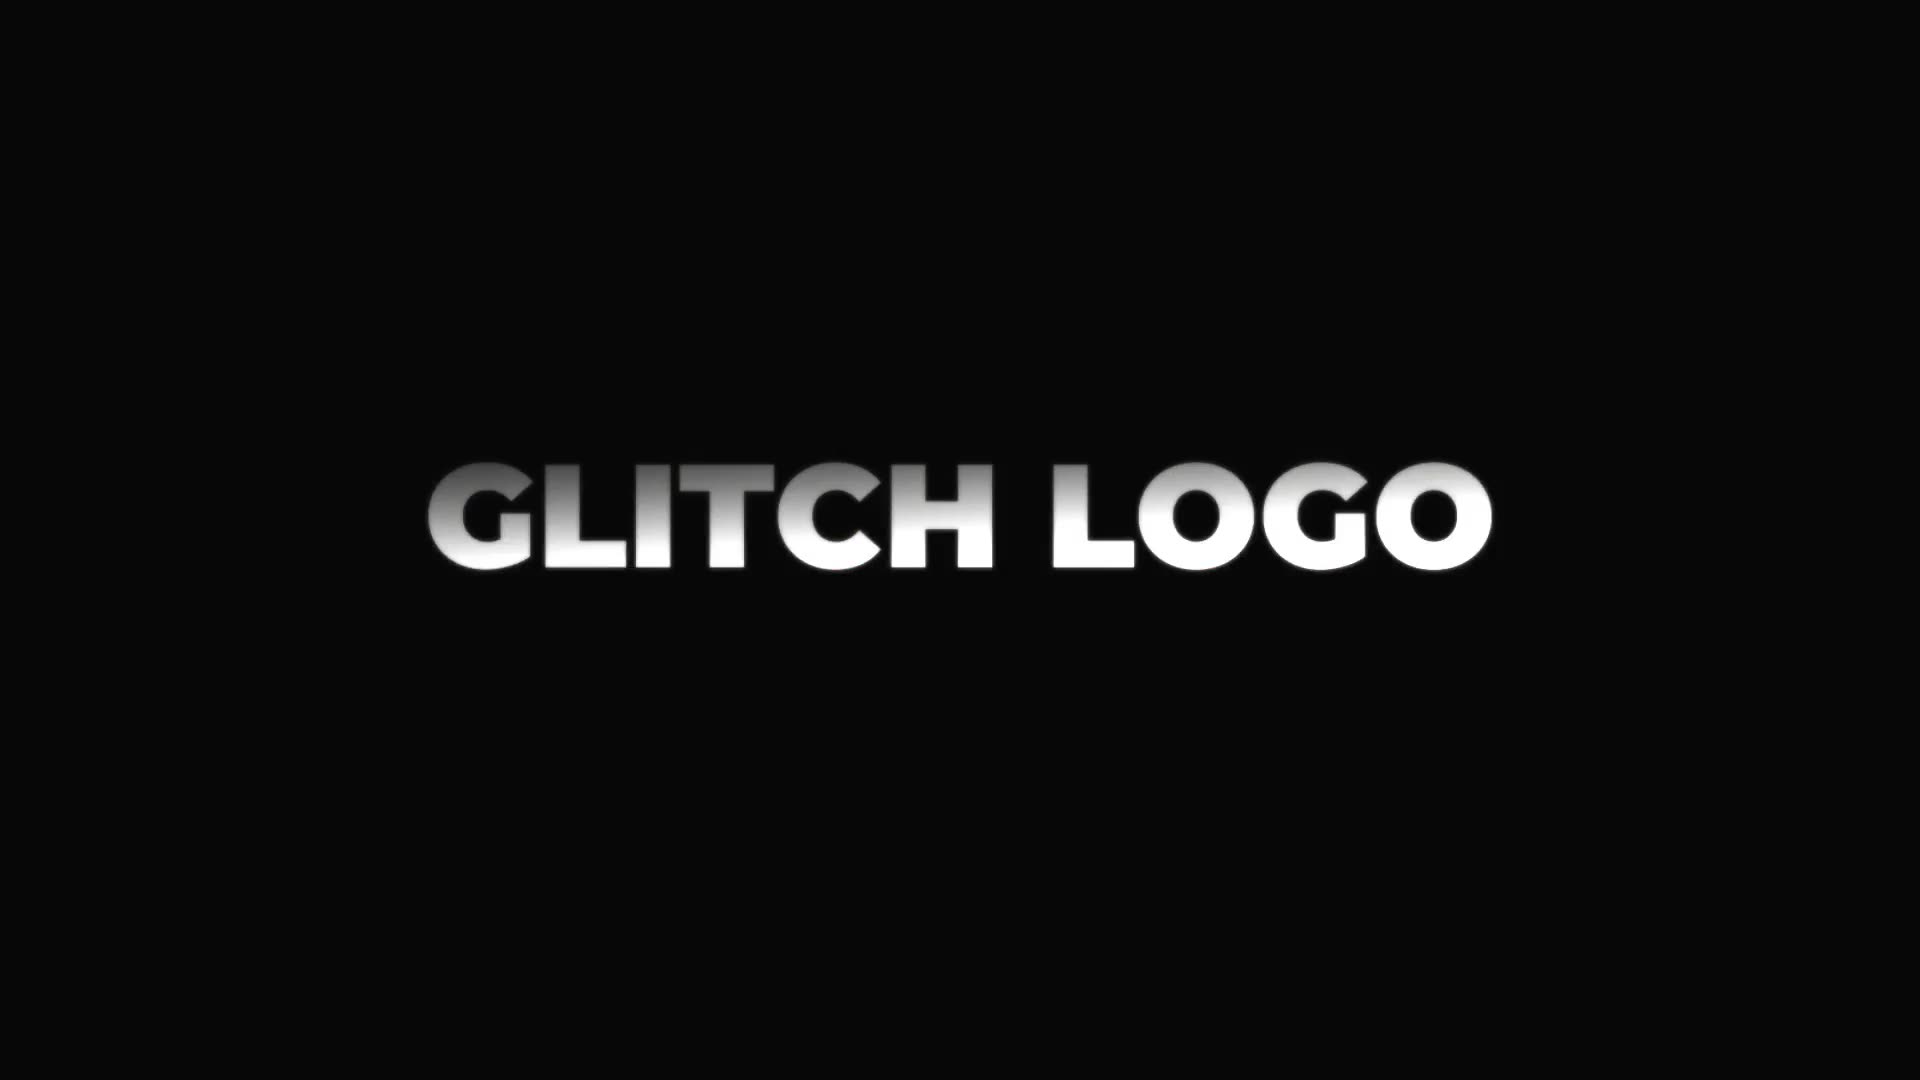 Glitch Logo Mogrt Videohive 22871341 Premiere Pro Image 6